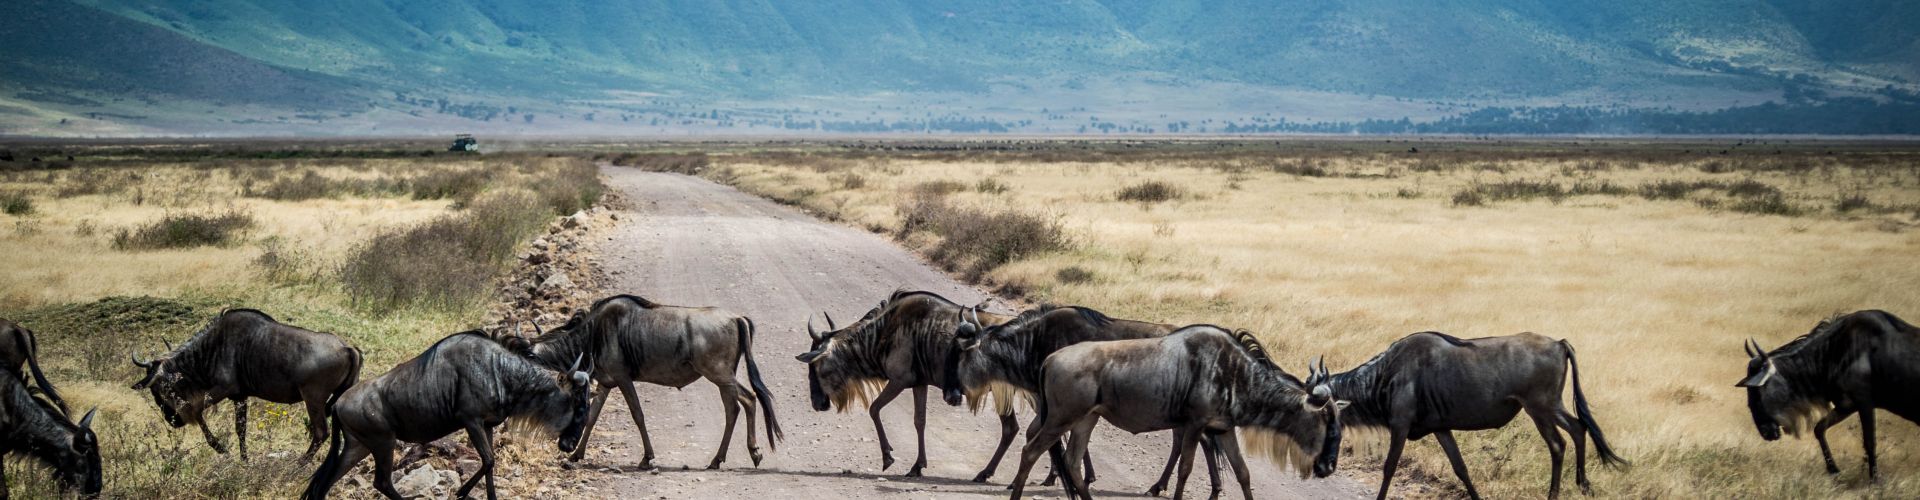 Los gnus tienen derecho de paso en el cráter del Ngorongoro